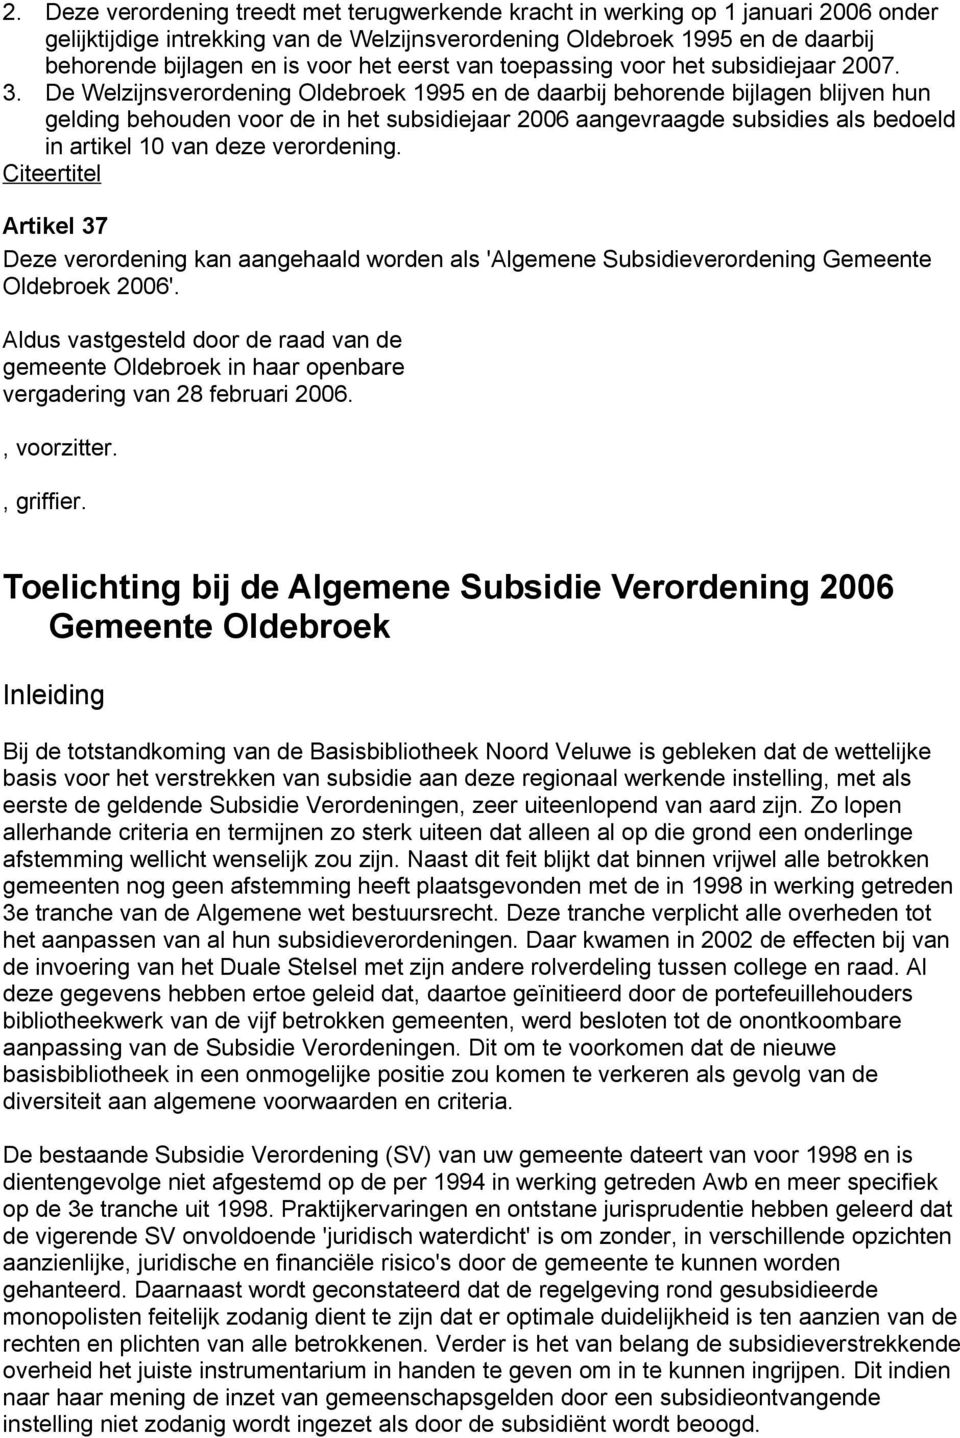 De Welzijnsverordening Oldebroek 1995 en de daarbij behorende bijlagen blijven hun gelding behouden voor de in het subsidiejaar 2006 aangevraagde subsidies als bedoeld in artikel 10 van deze